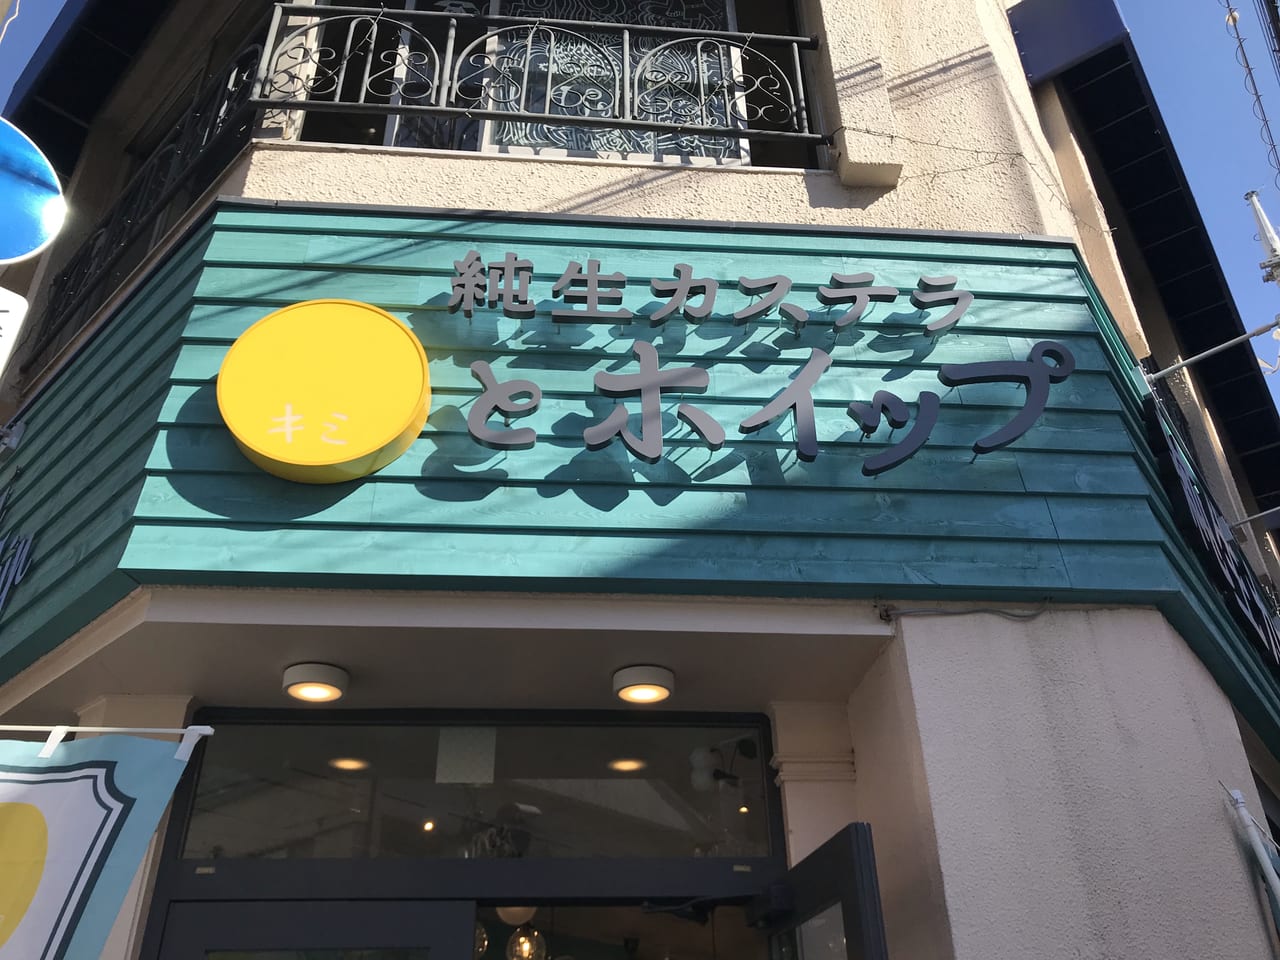 世田谷区経堂に純生カステラ専門店「キミとポイップ世田谷経堂店」が2021年9月23日にオープンしました。ふわっしゅわ口溶けるカステラの食べ方は４種類